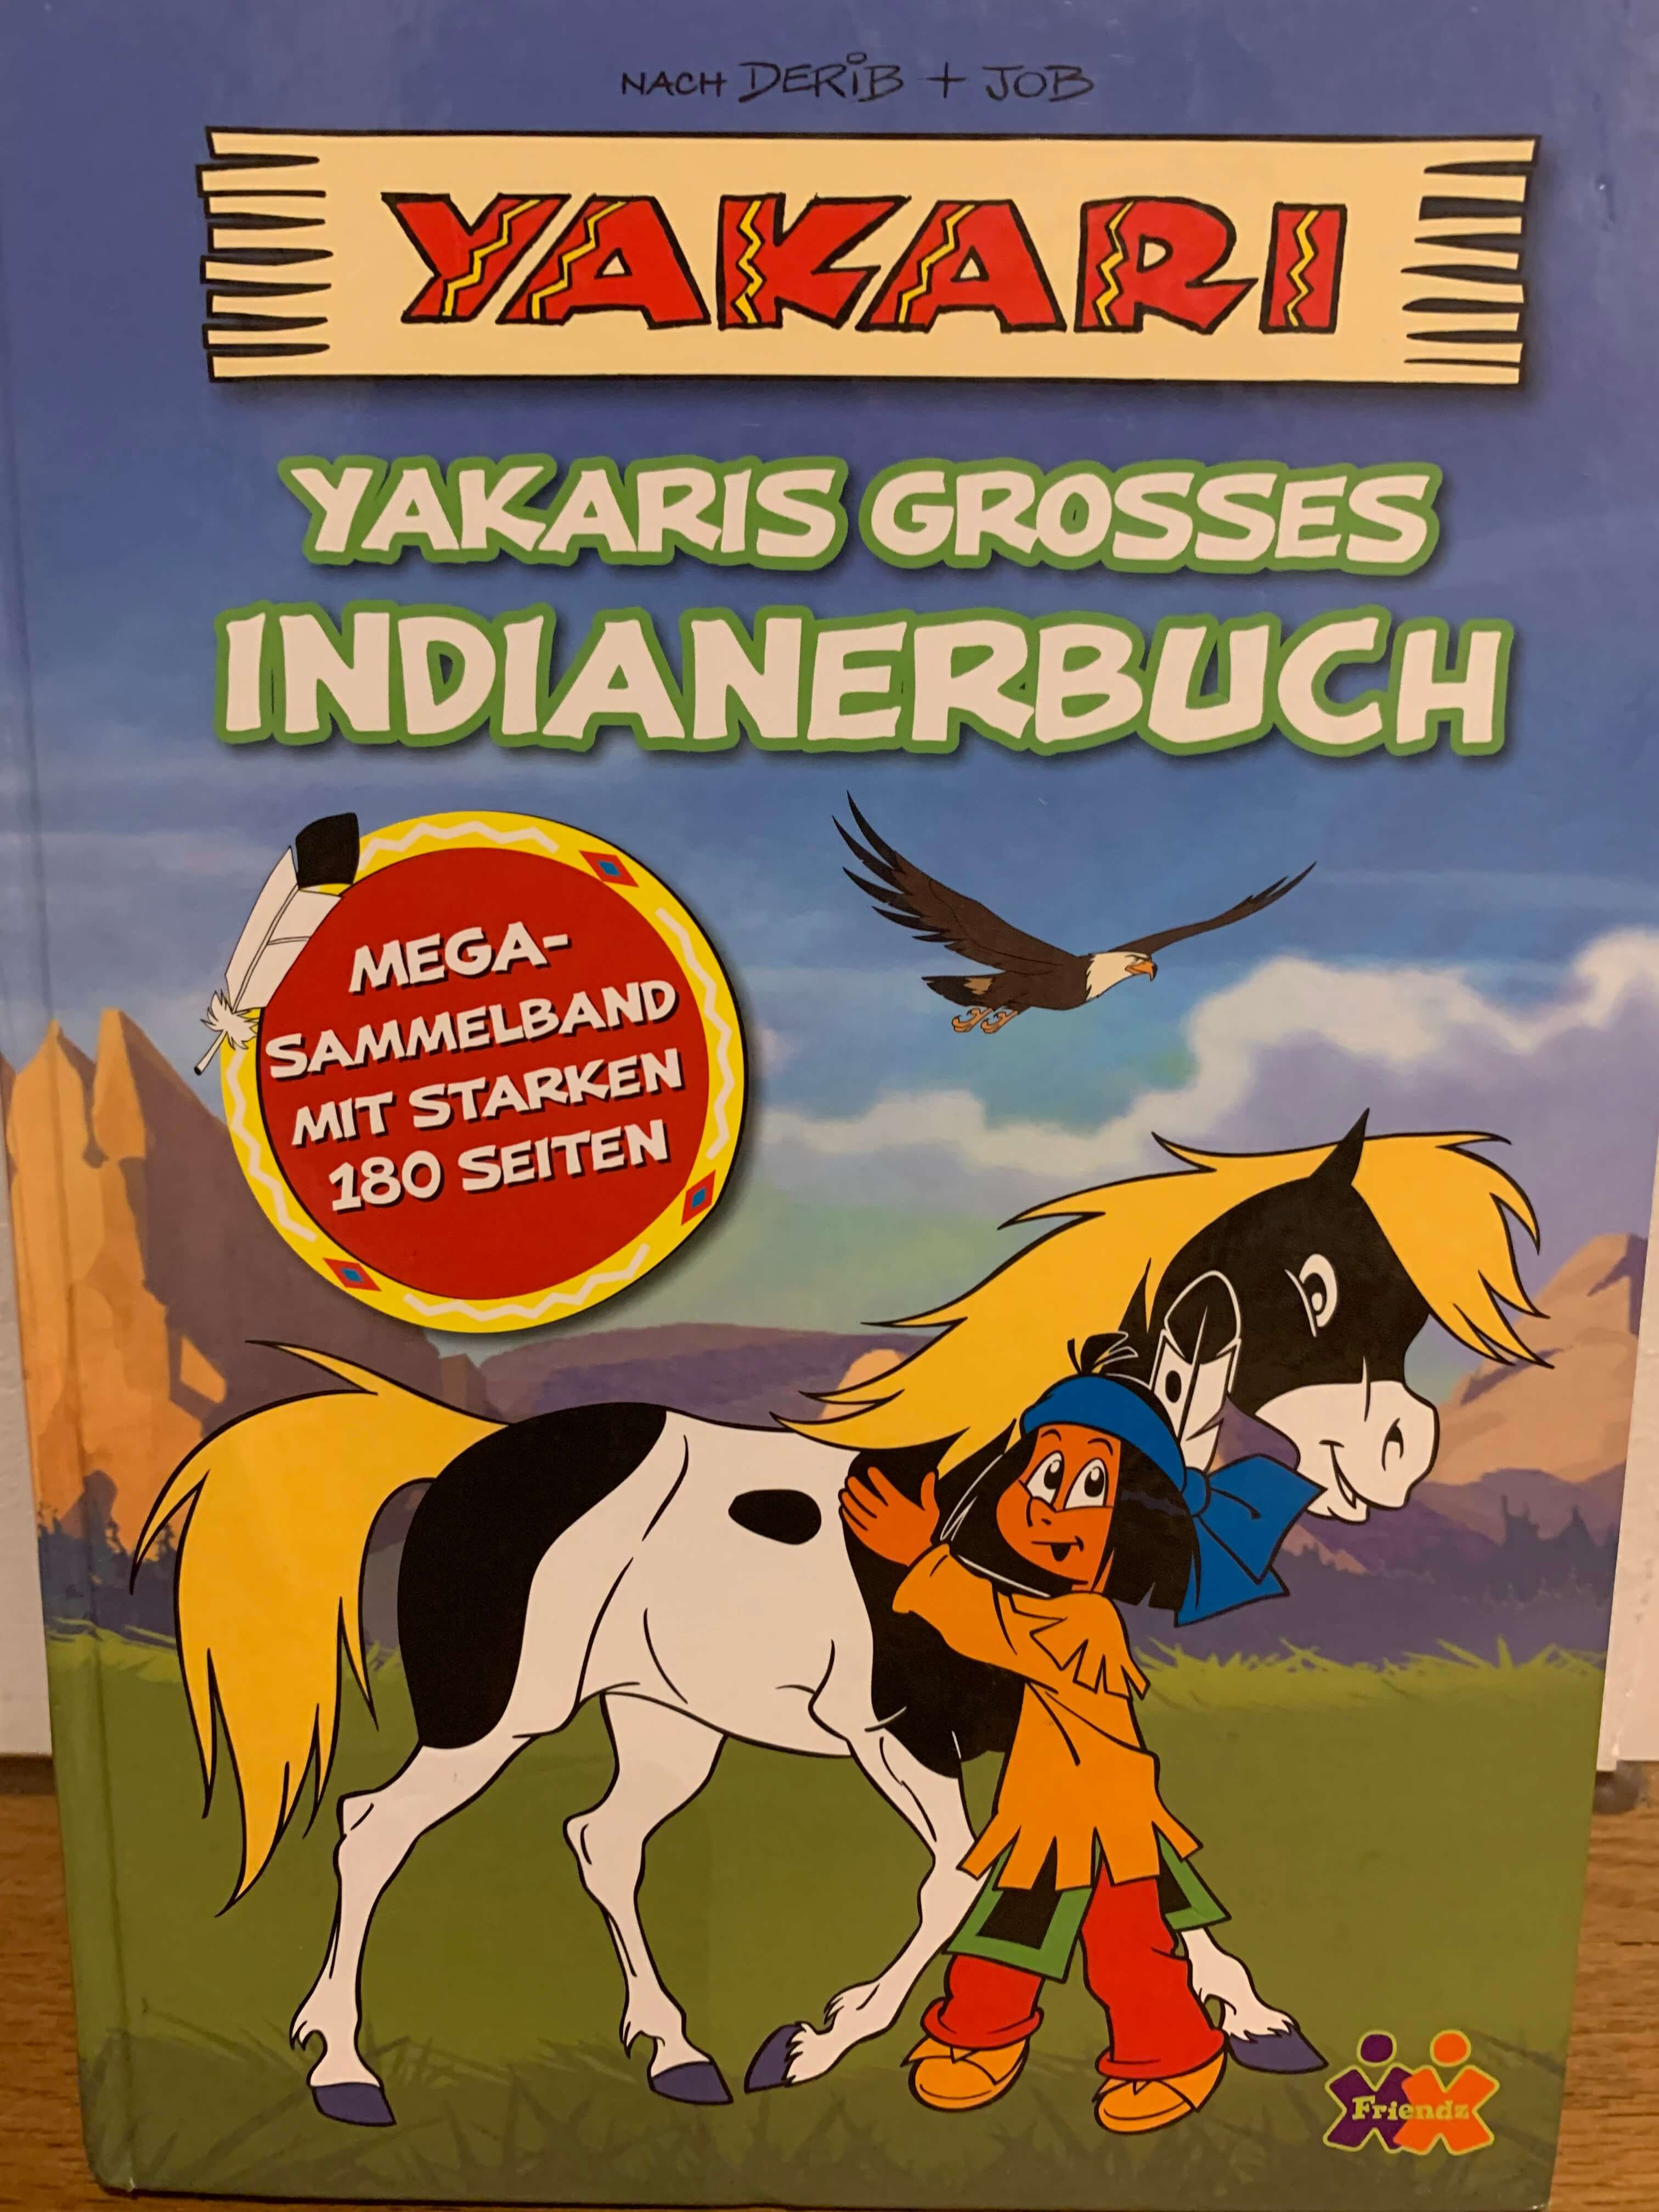 Yakaris grosses Indianerbuch- Mega-Sammelband mit starken 180 Seiten